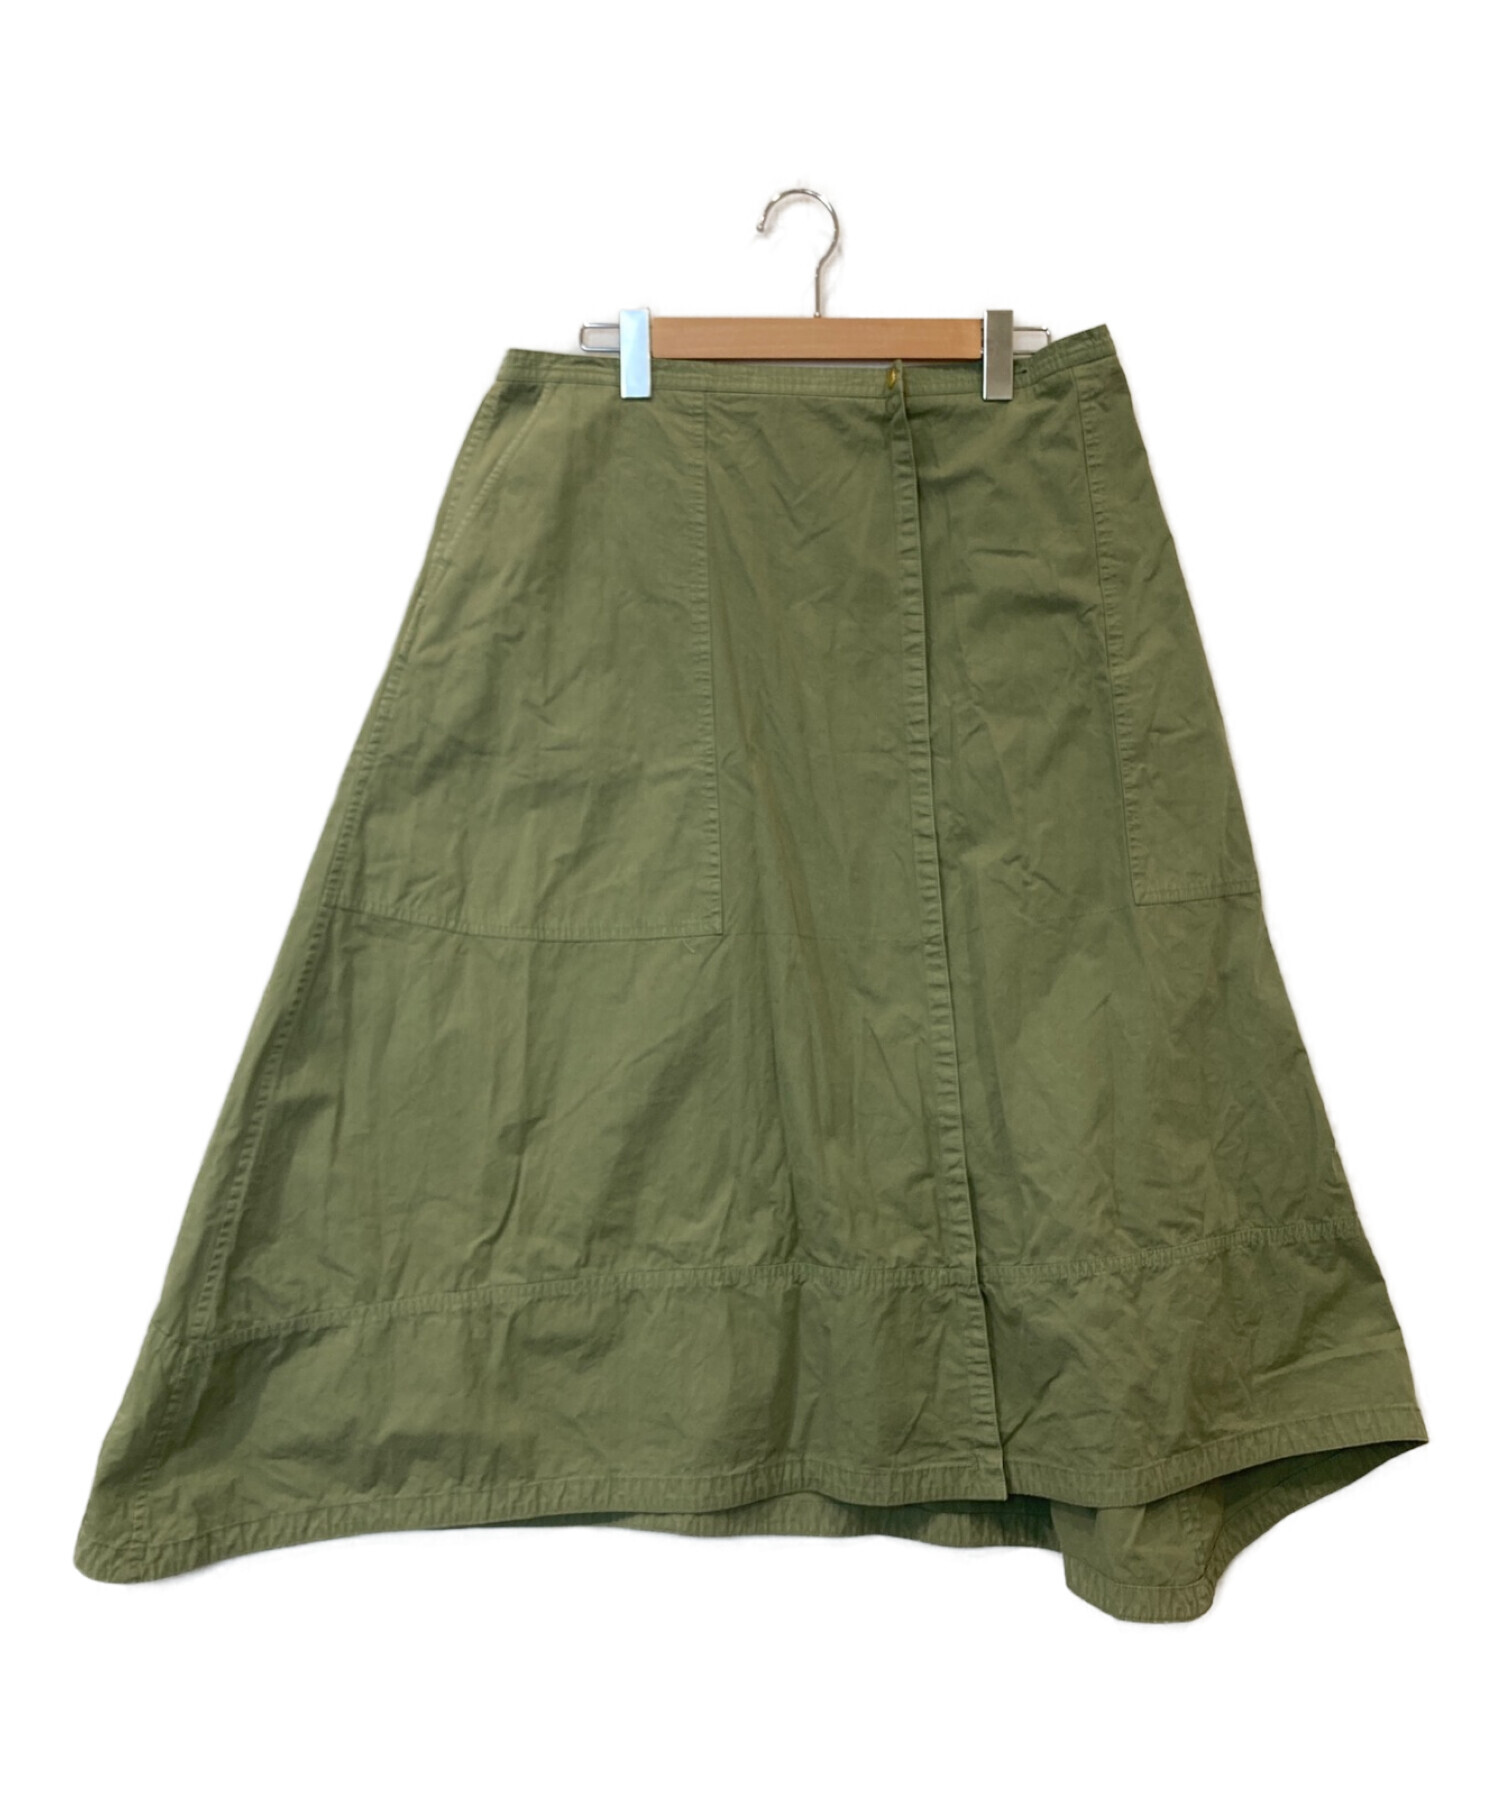 ドゥロワー スカート グリーン 36サイズ - スカート